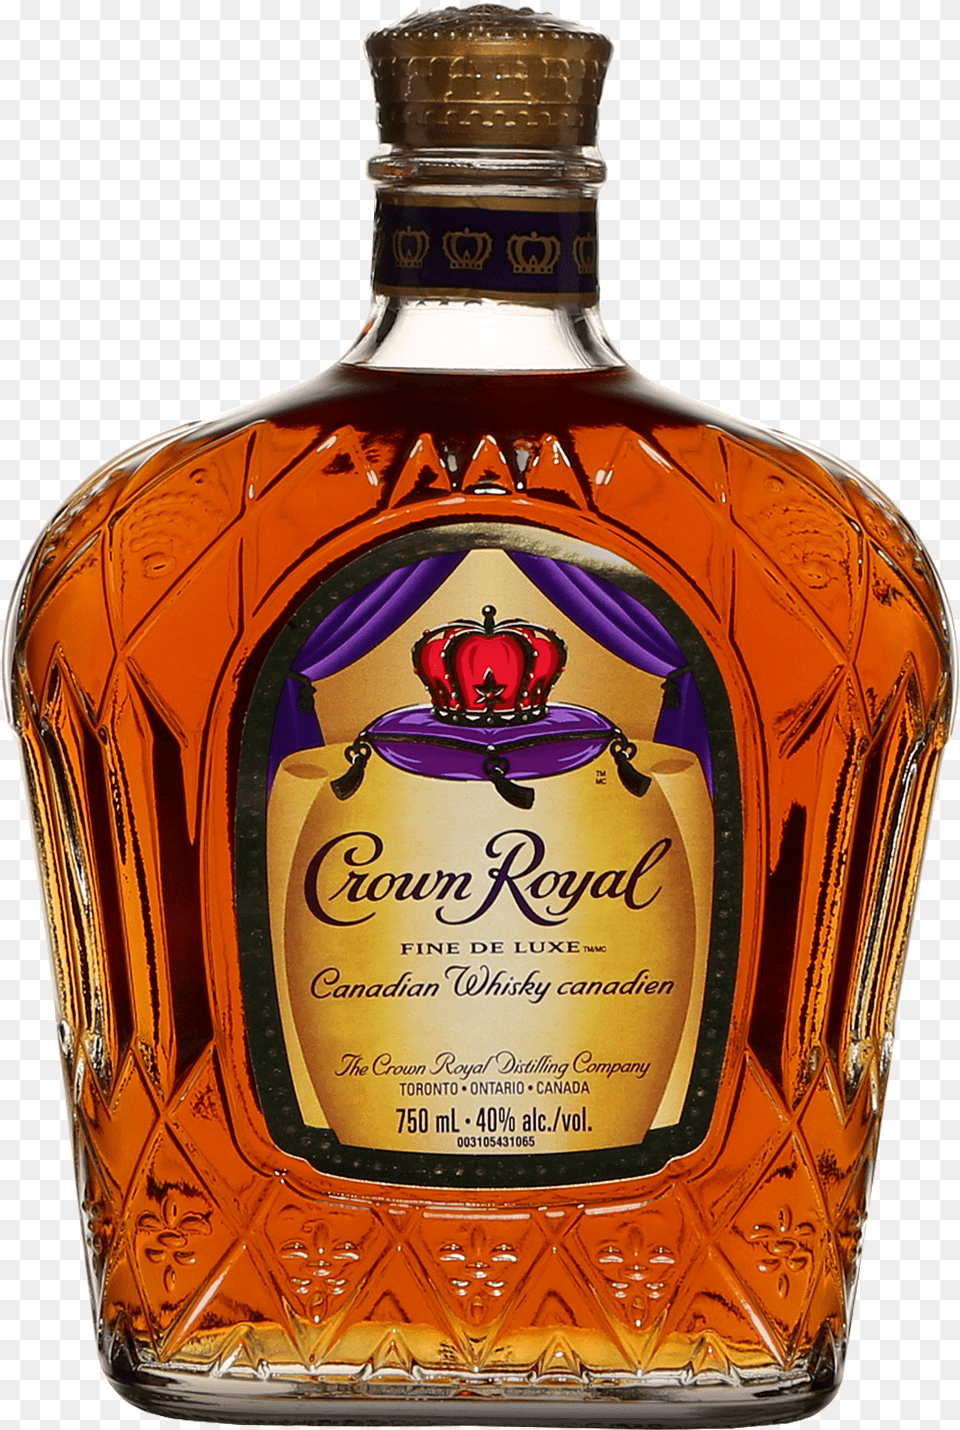 Crown Royal Crown Royal Saq, Alcohol, Liquor, Whisky, Beverage Free Png